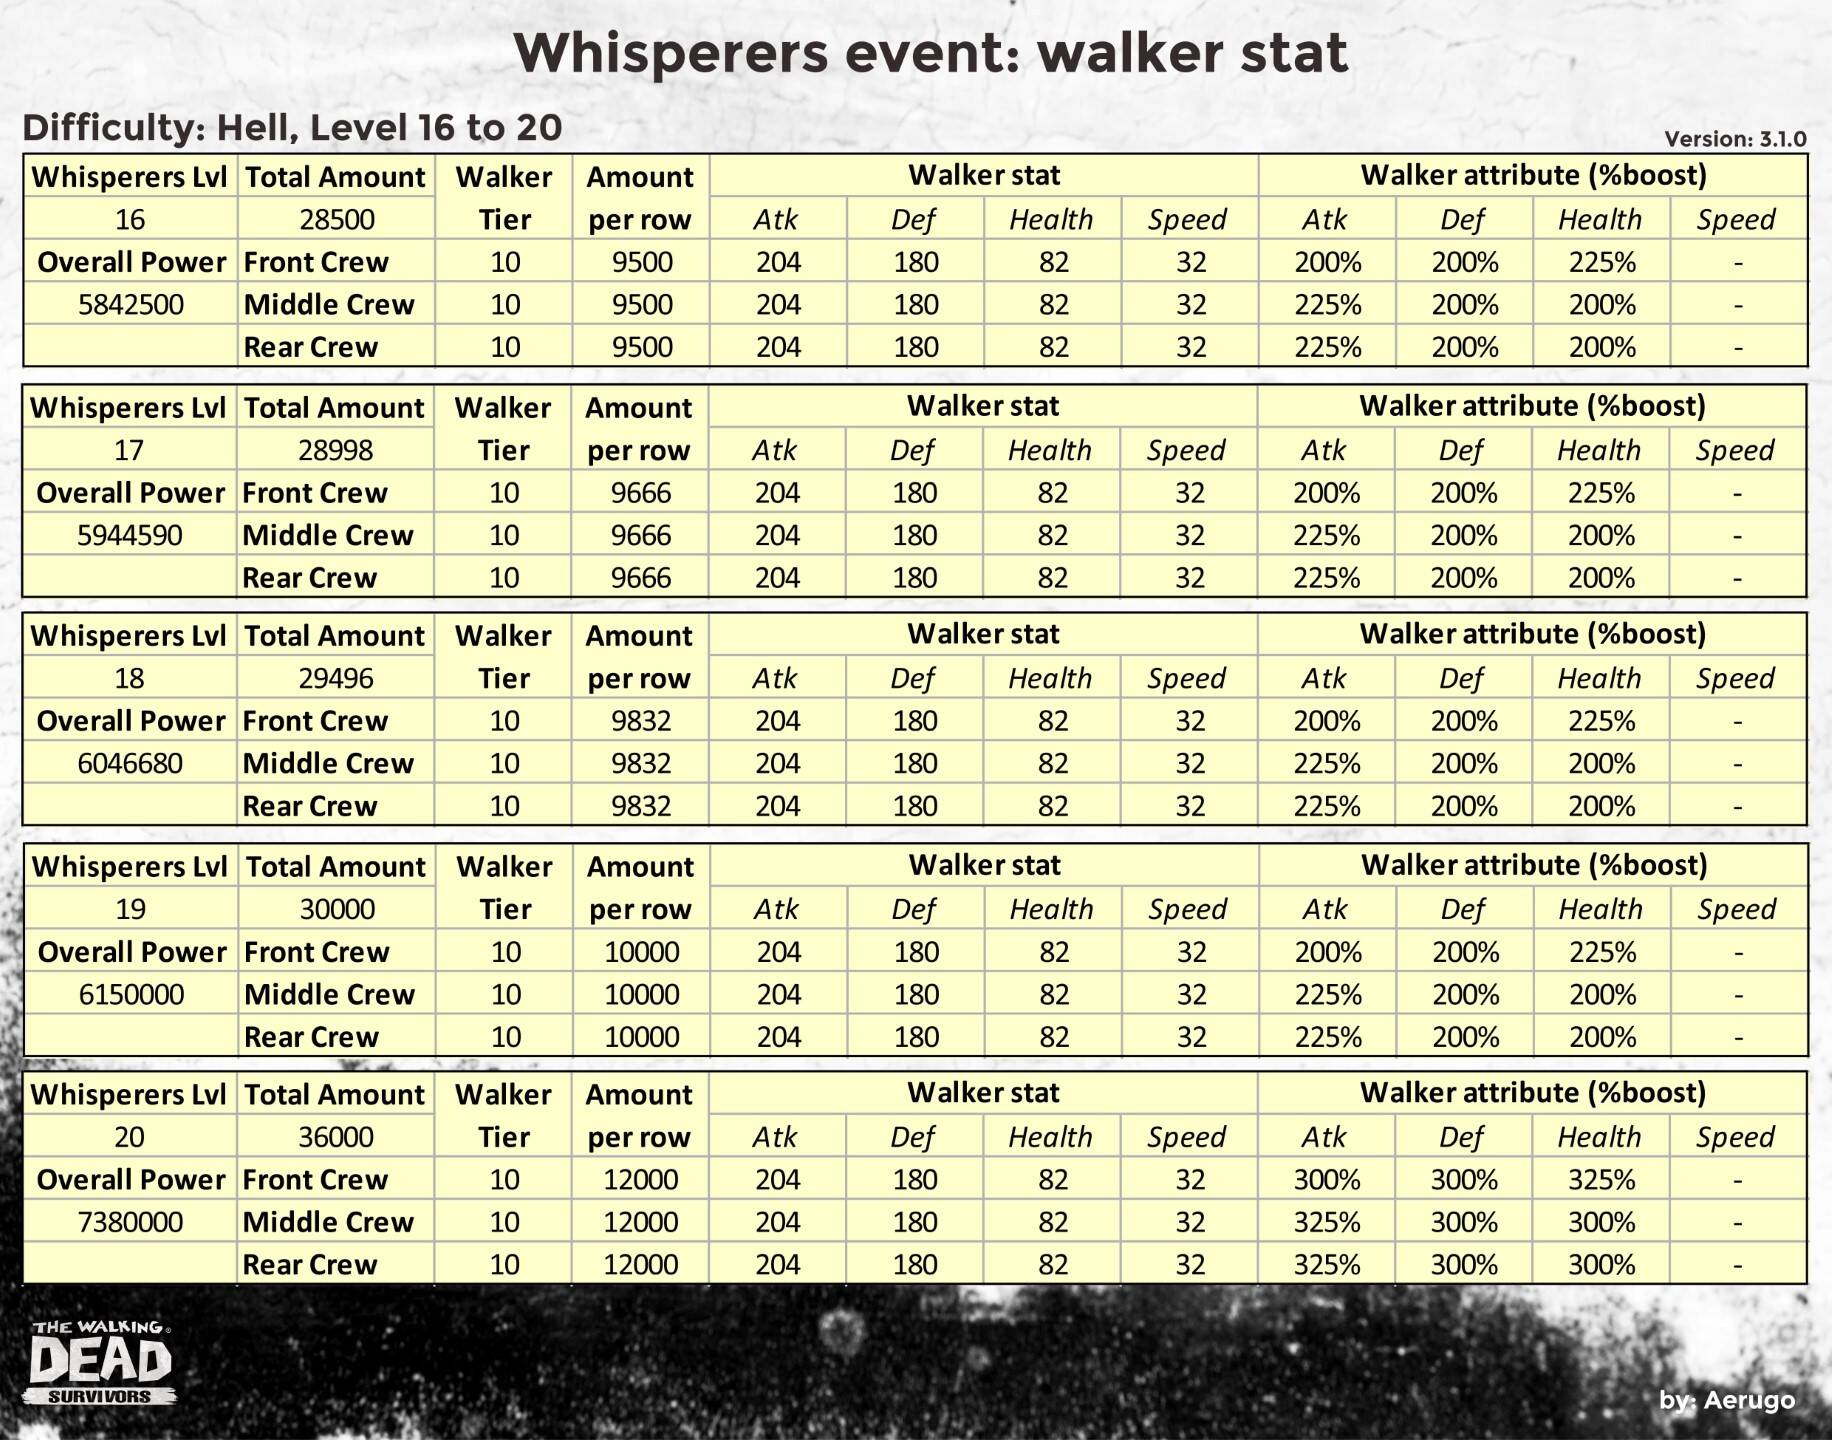 Whisperers_walkerstat_v3.1.0_part20 (1).jpg